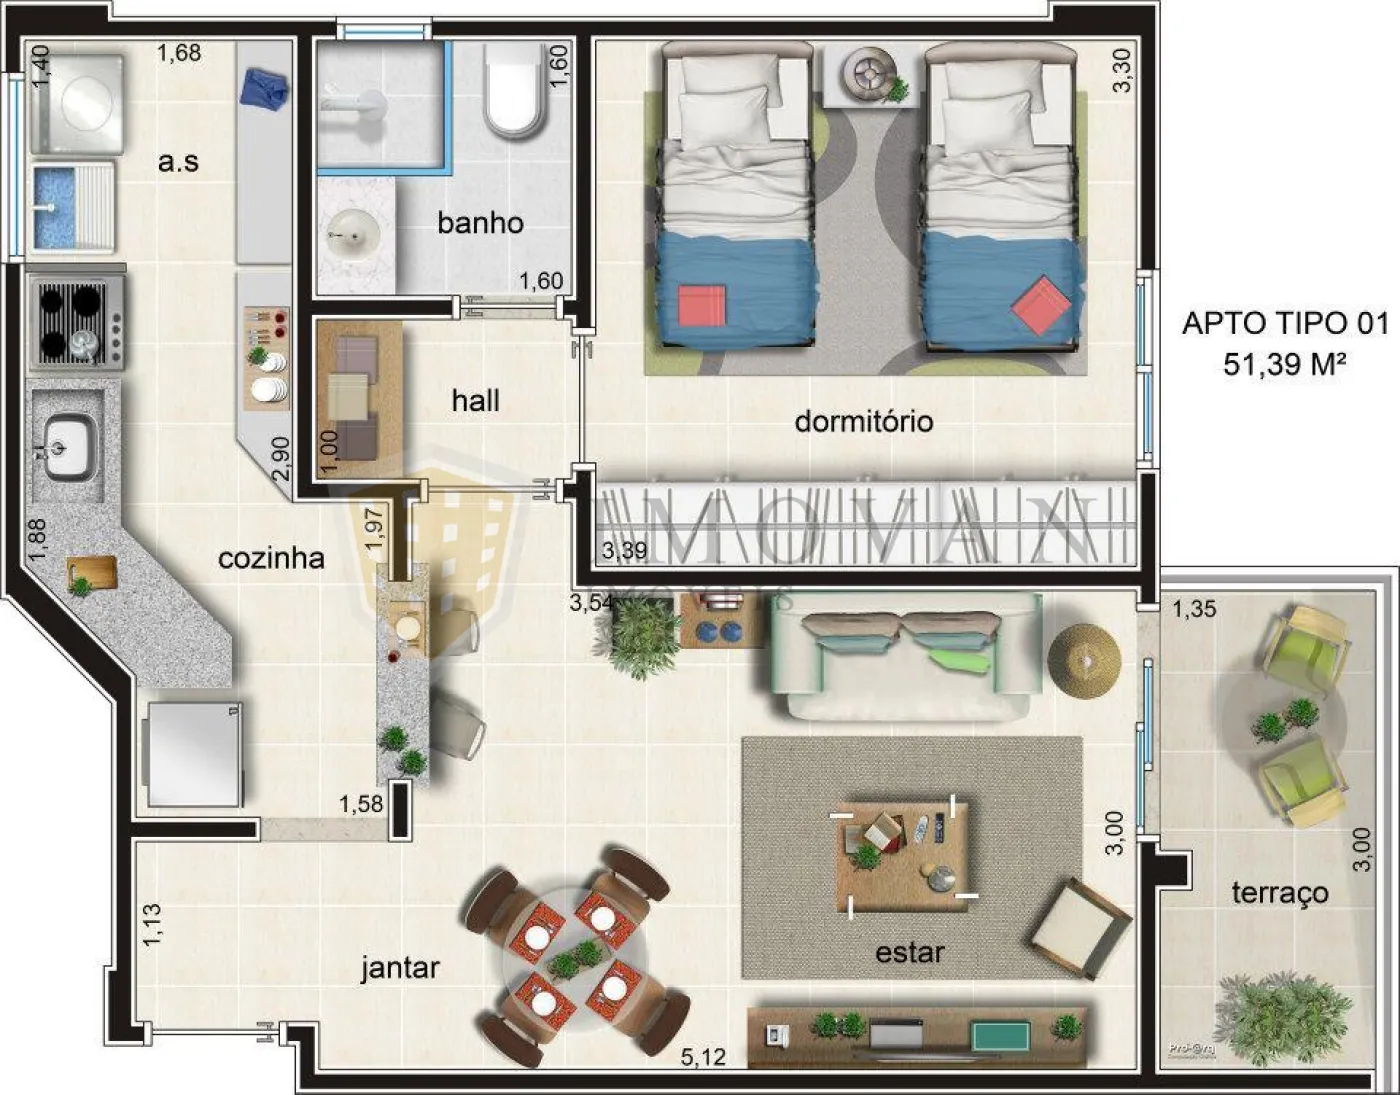 Comprar Apartamento / Padrão em Ribeirão Preto R$ 289.000,00 - Foto 2